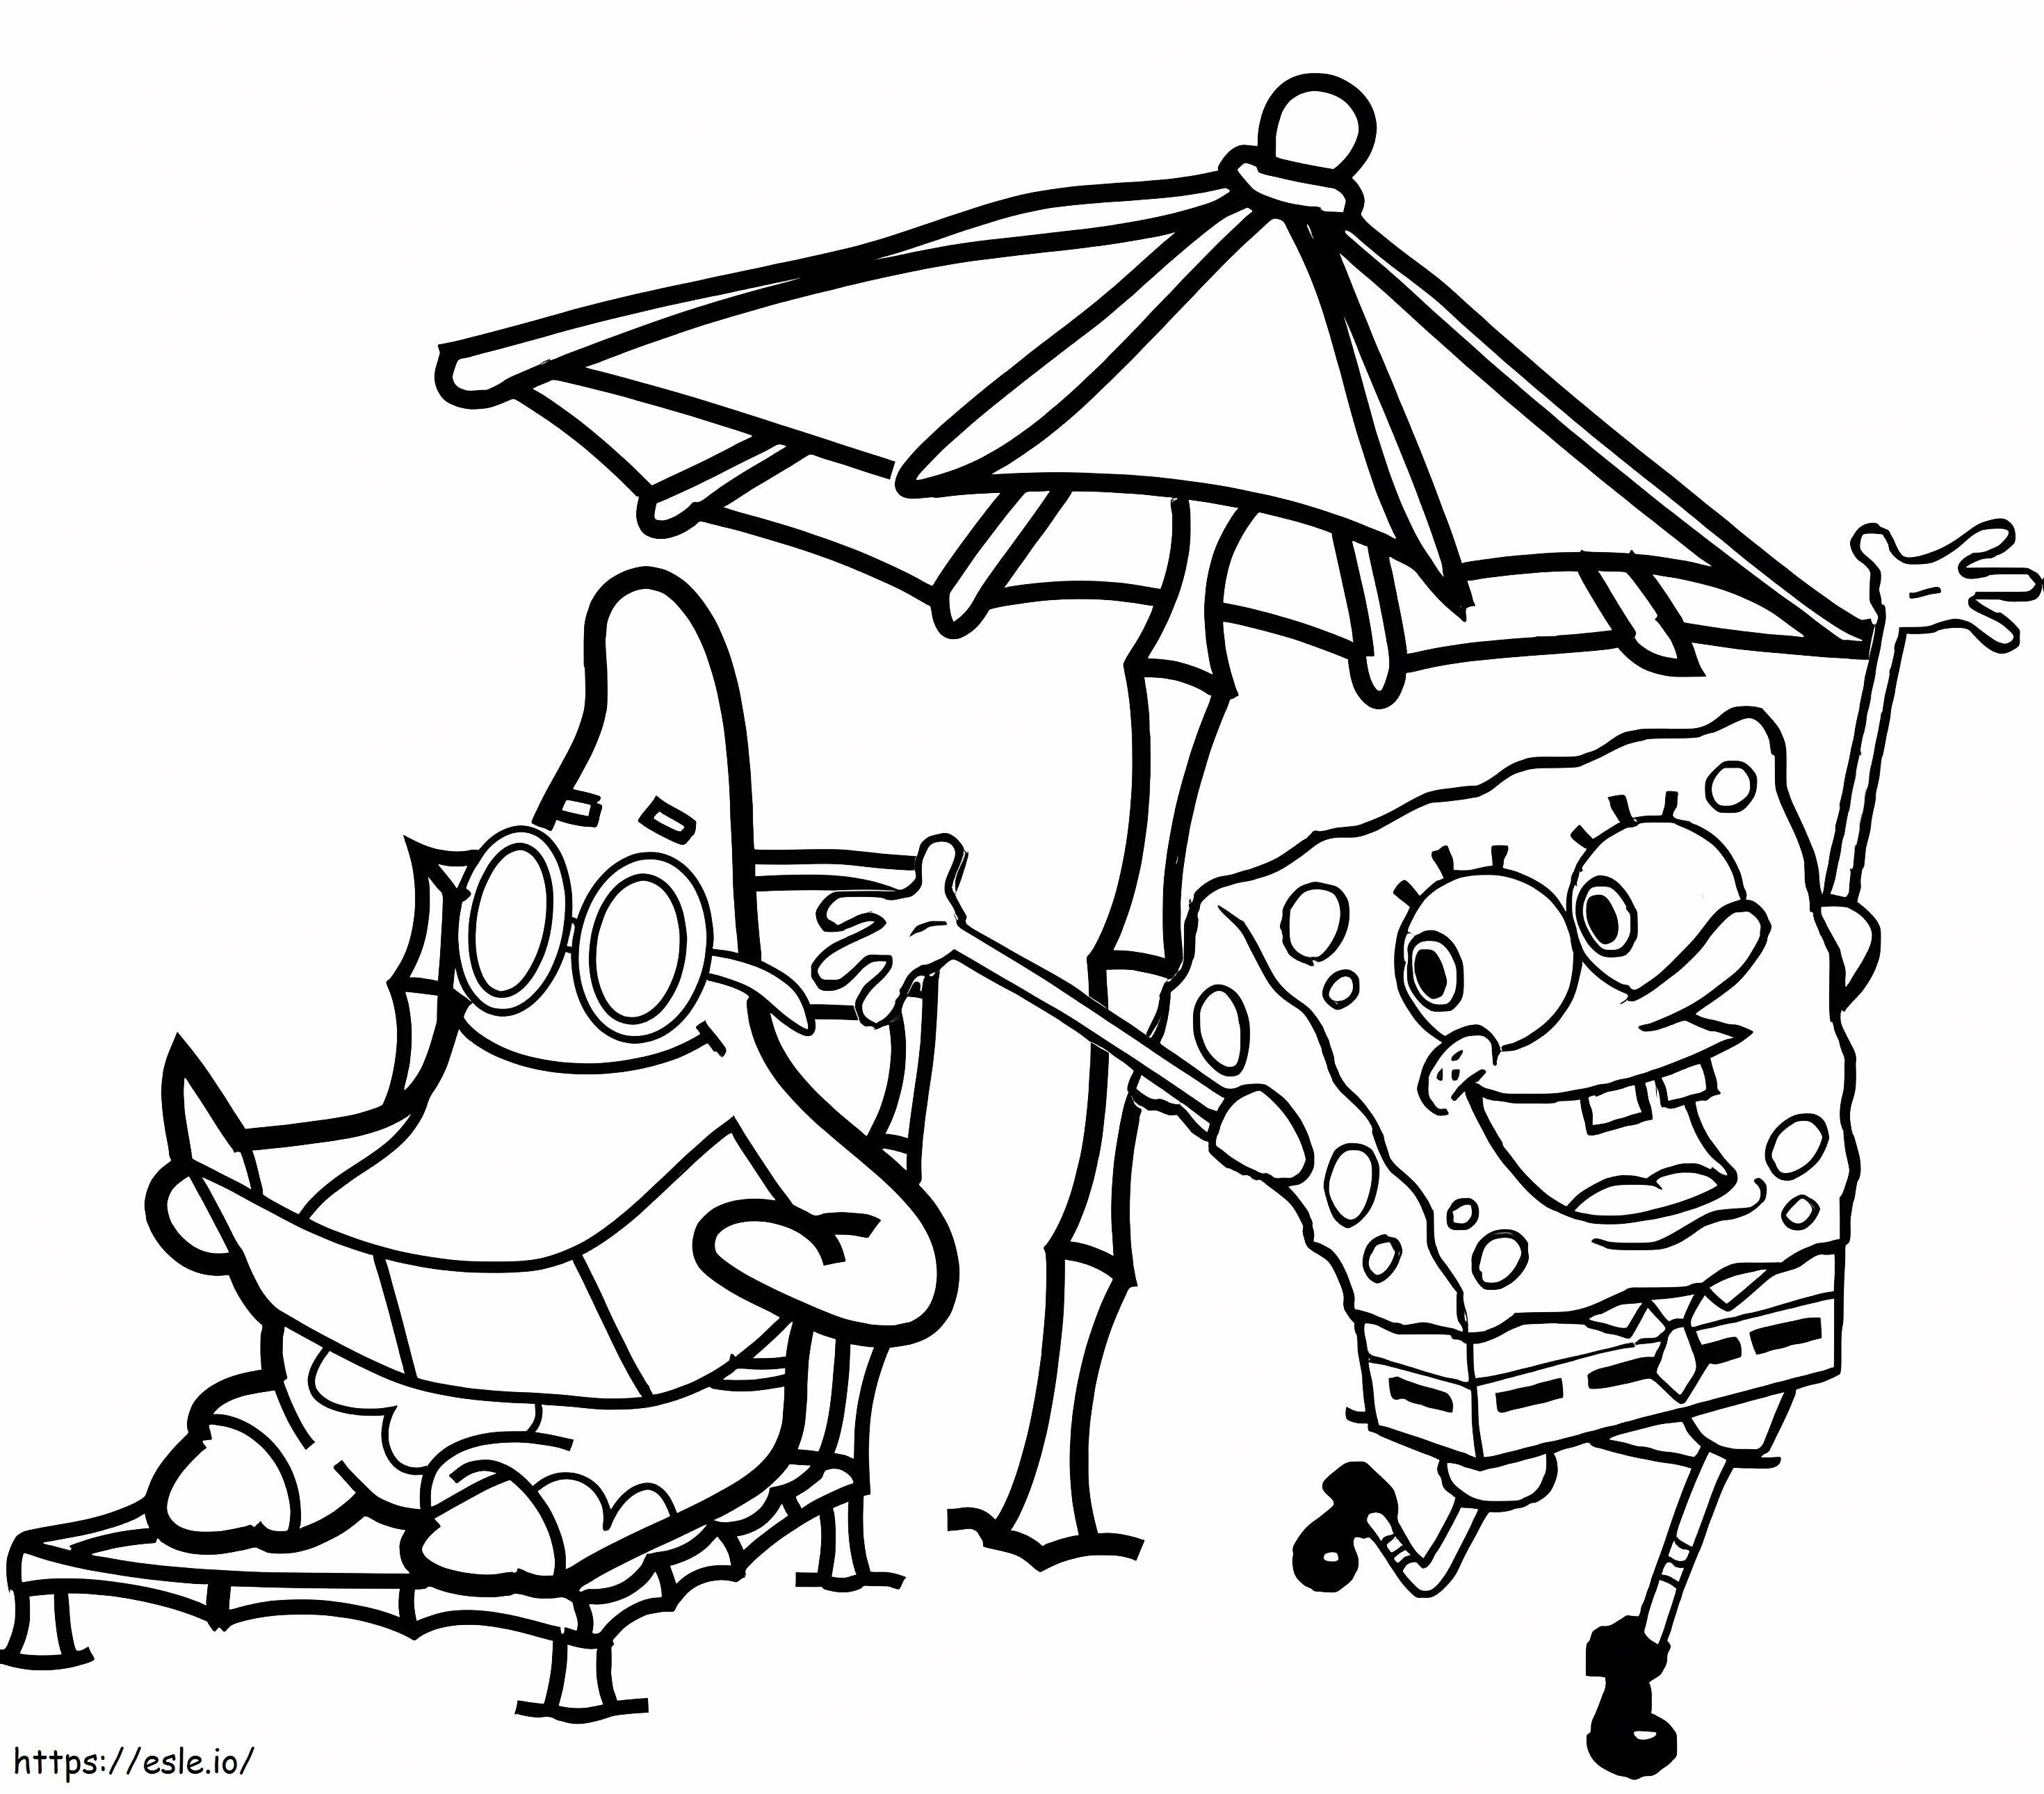 Patrick Star e Bob Esponja na praia para colorir